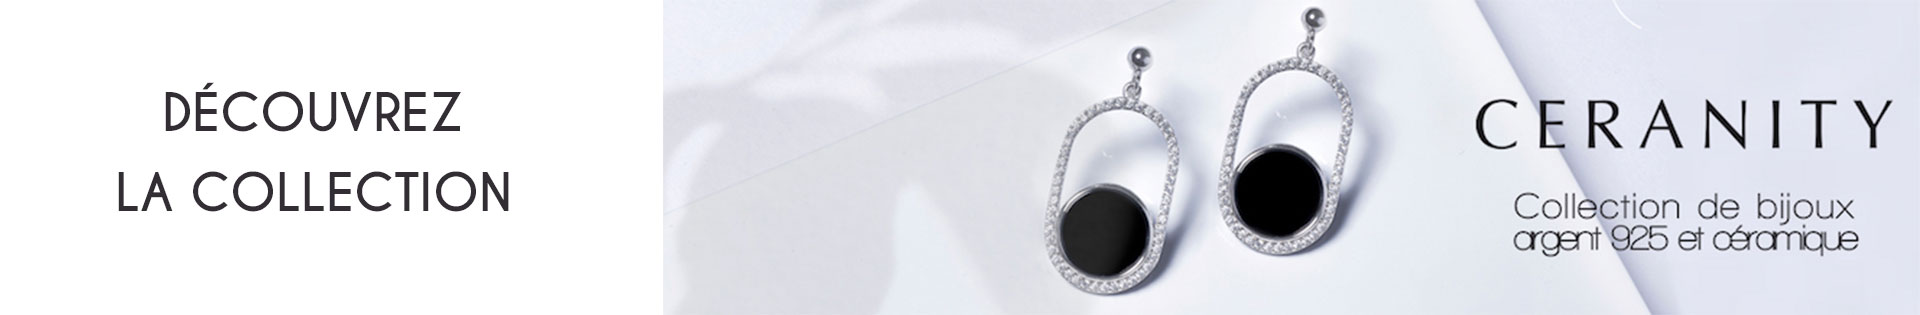 Boucles d'oreille - Ceranity Silver - plaqué or - or 375 millièmes